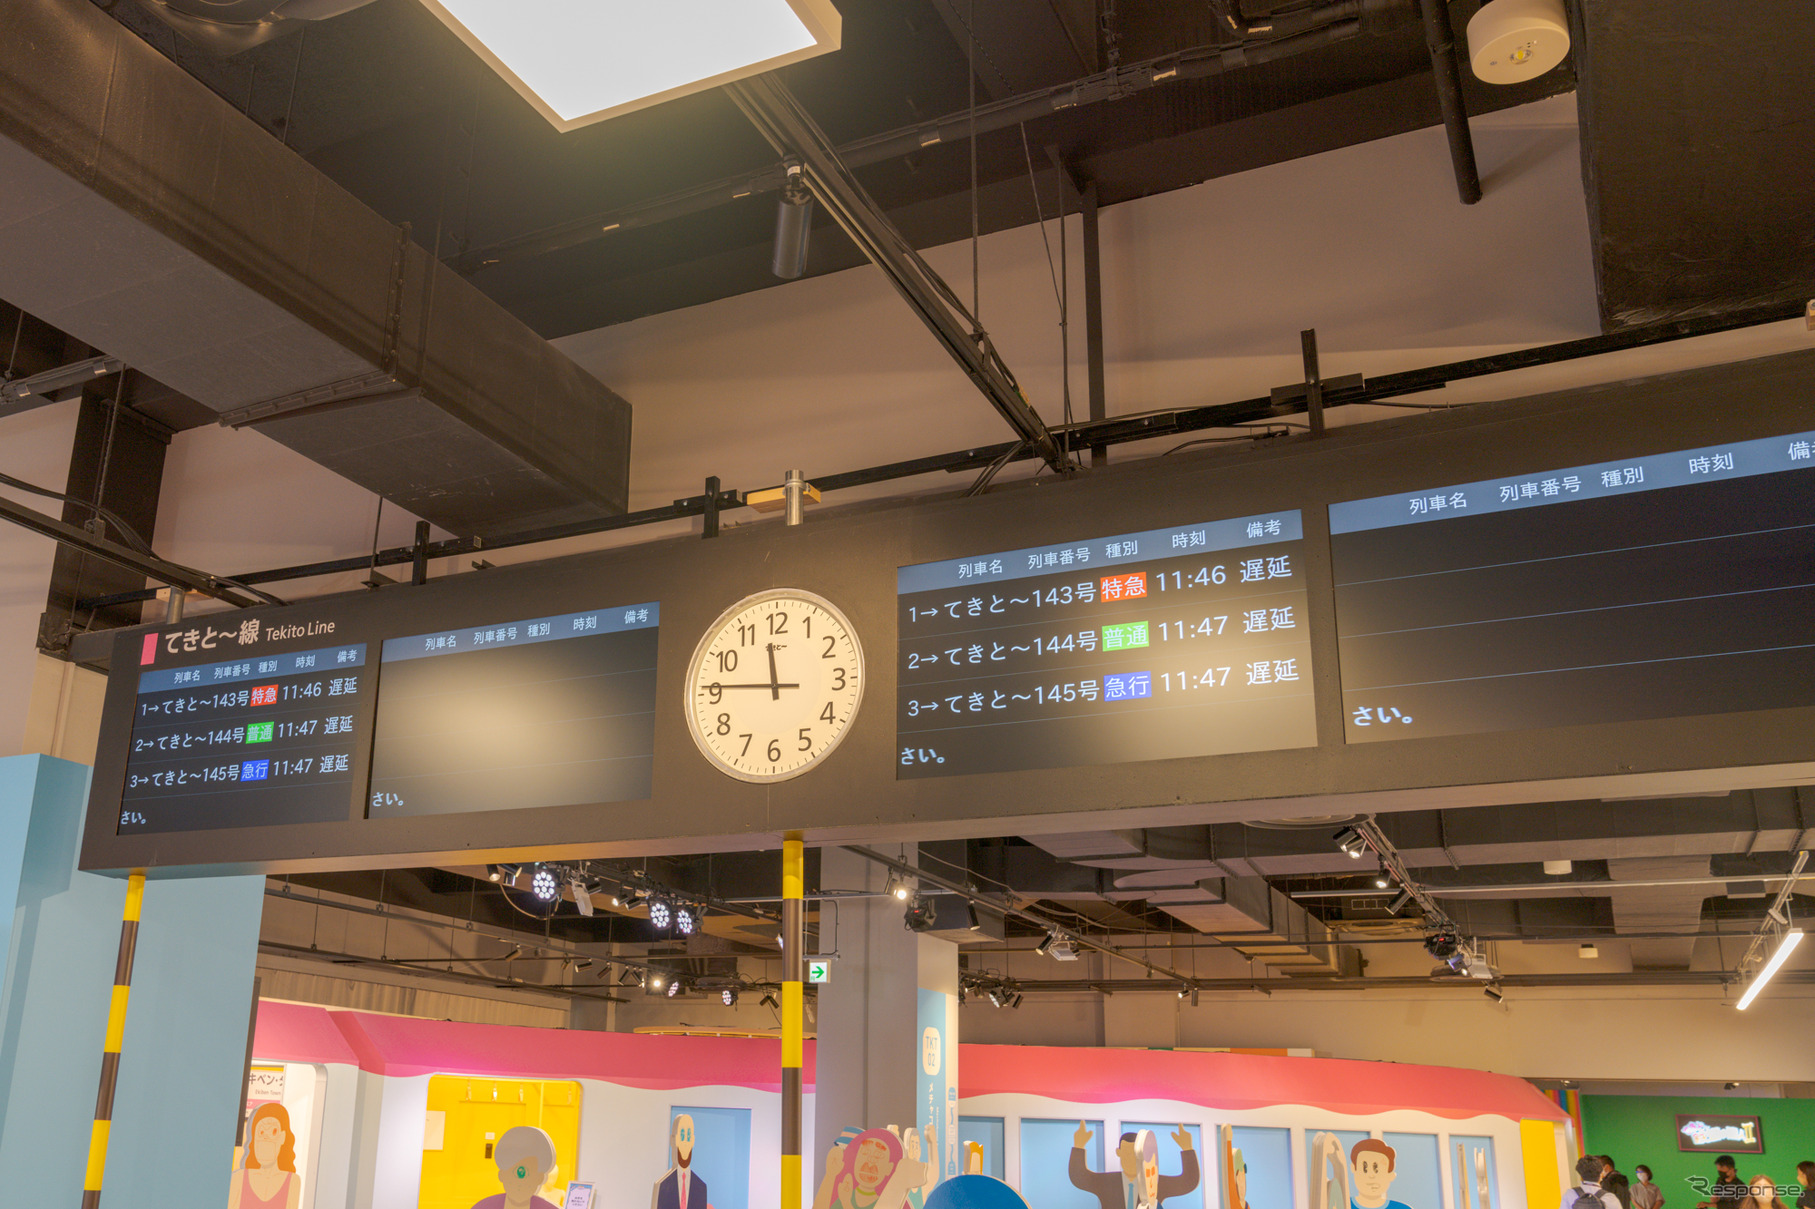 電車発着時刻掲示板。遅延した電車ばかりなのであてにならない。ただし真ん中の時計は正確でした。